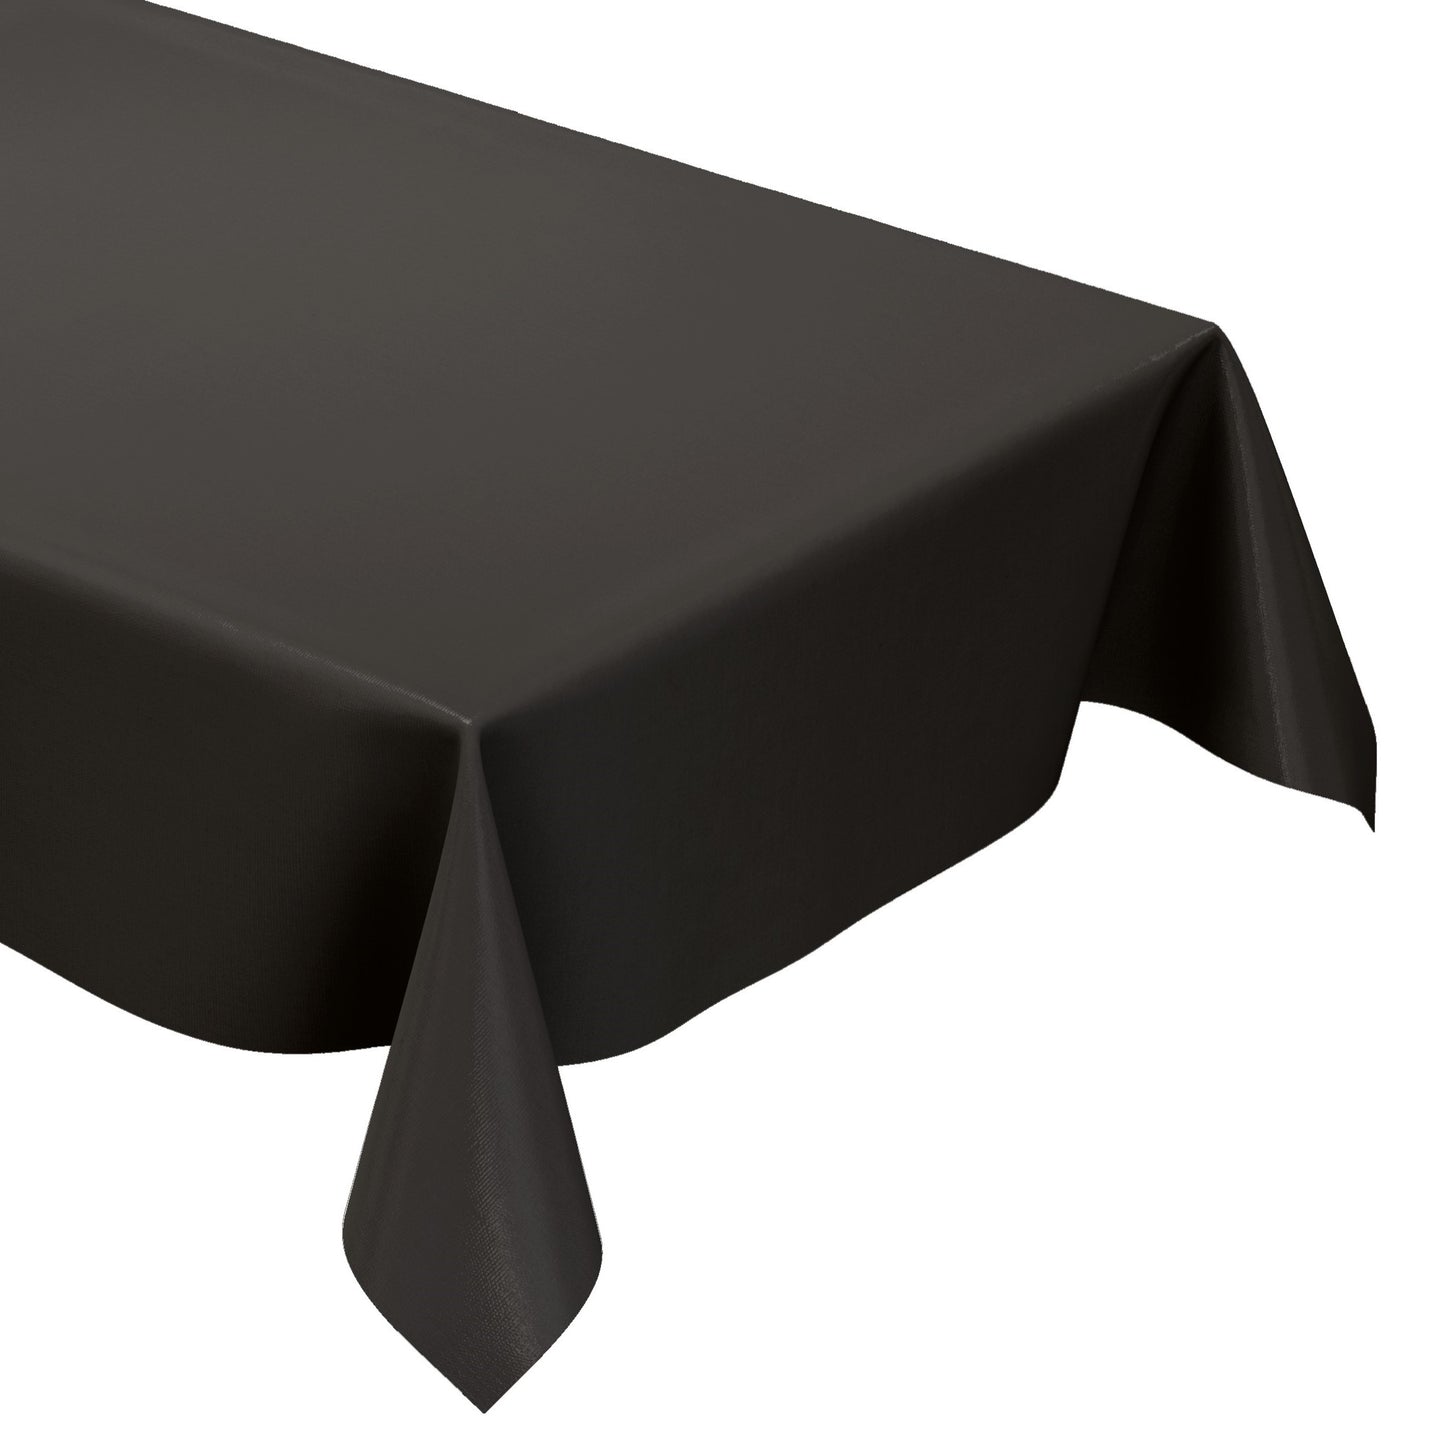 KEVKUS Wachstuch Tischdecke uni 24 Schwarz einfarbig wählbar in eckig, rund und oval -